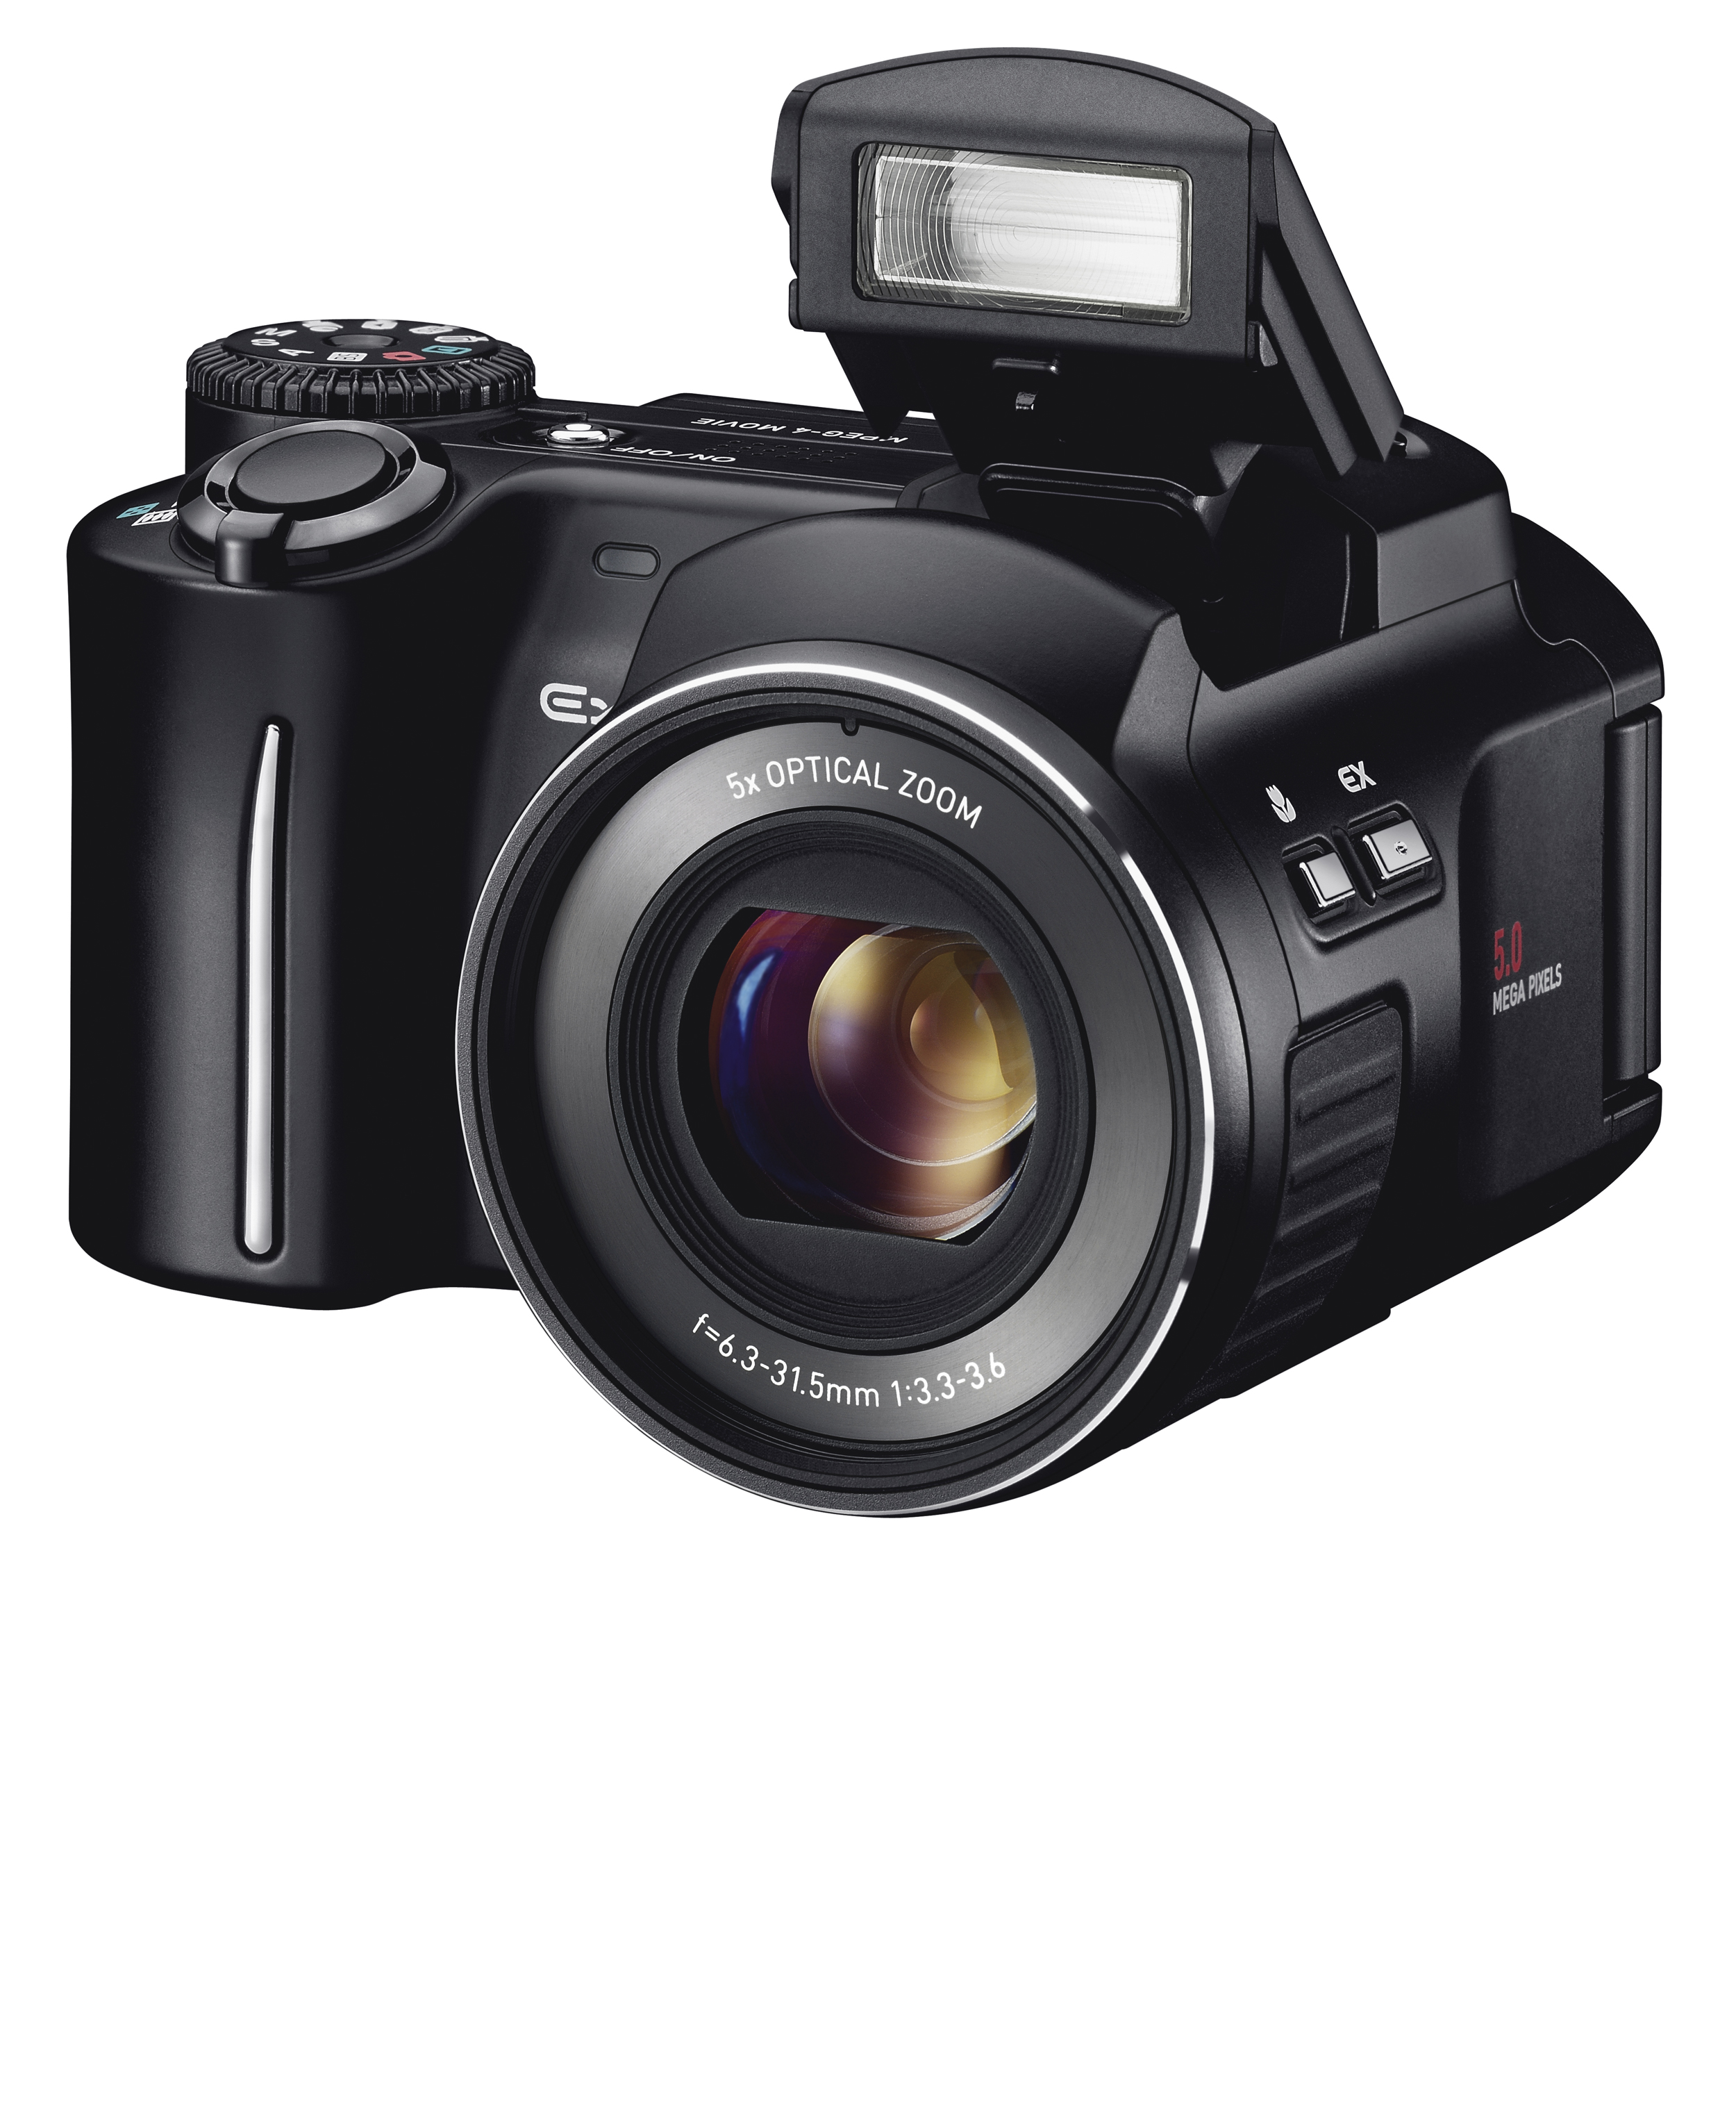 Casio Exilim EX-P505 Digital Camera